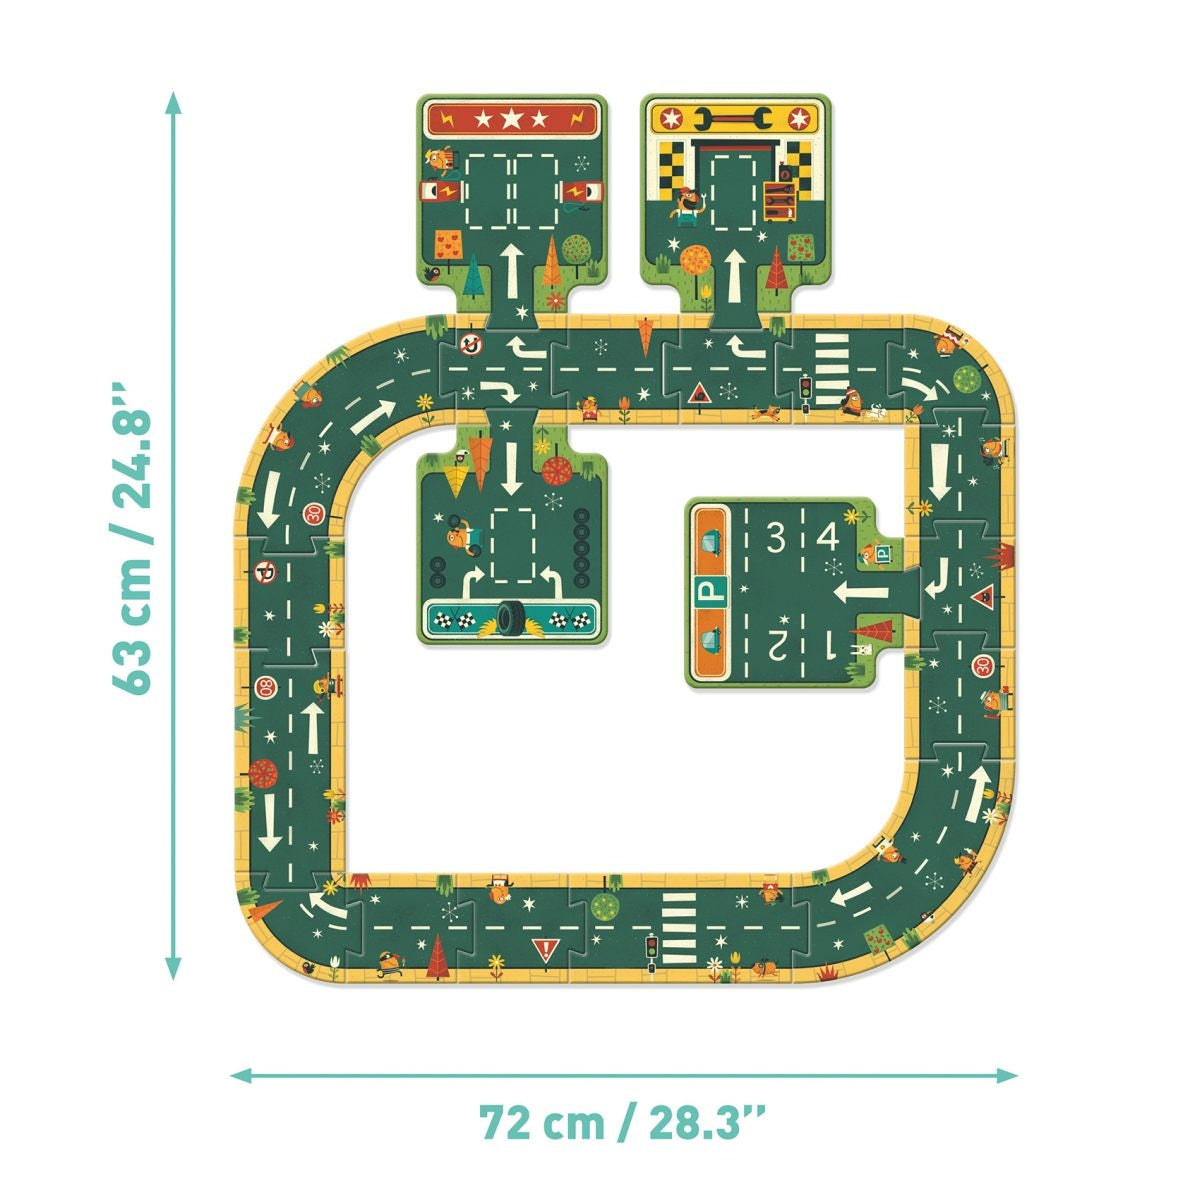 Genial ist dieses doppelt nutzbare Straßenpuzzle von Djeco. Dieses schöne Pop to play Straßen können wie ein Puzzle erbaut werden. Danach geht's ans Spielen! Hier können Kinder Autos nehmen die sie bereits haben und nach Lust und Laune herumfahren